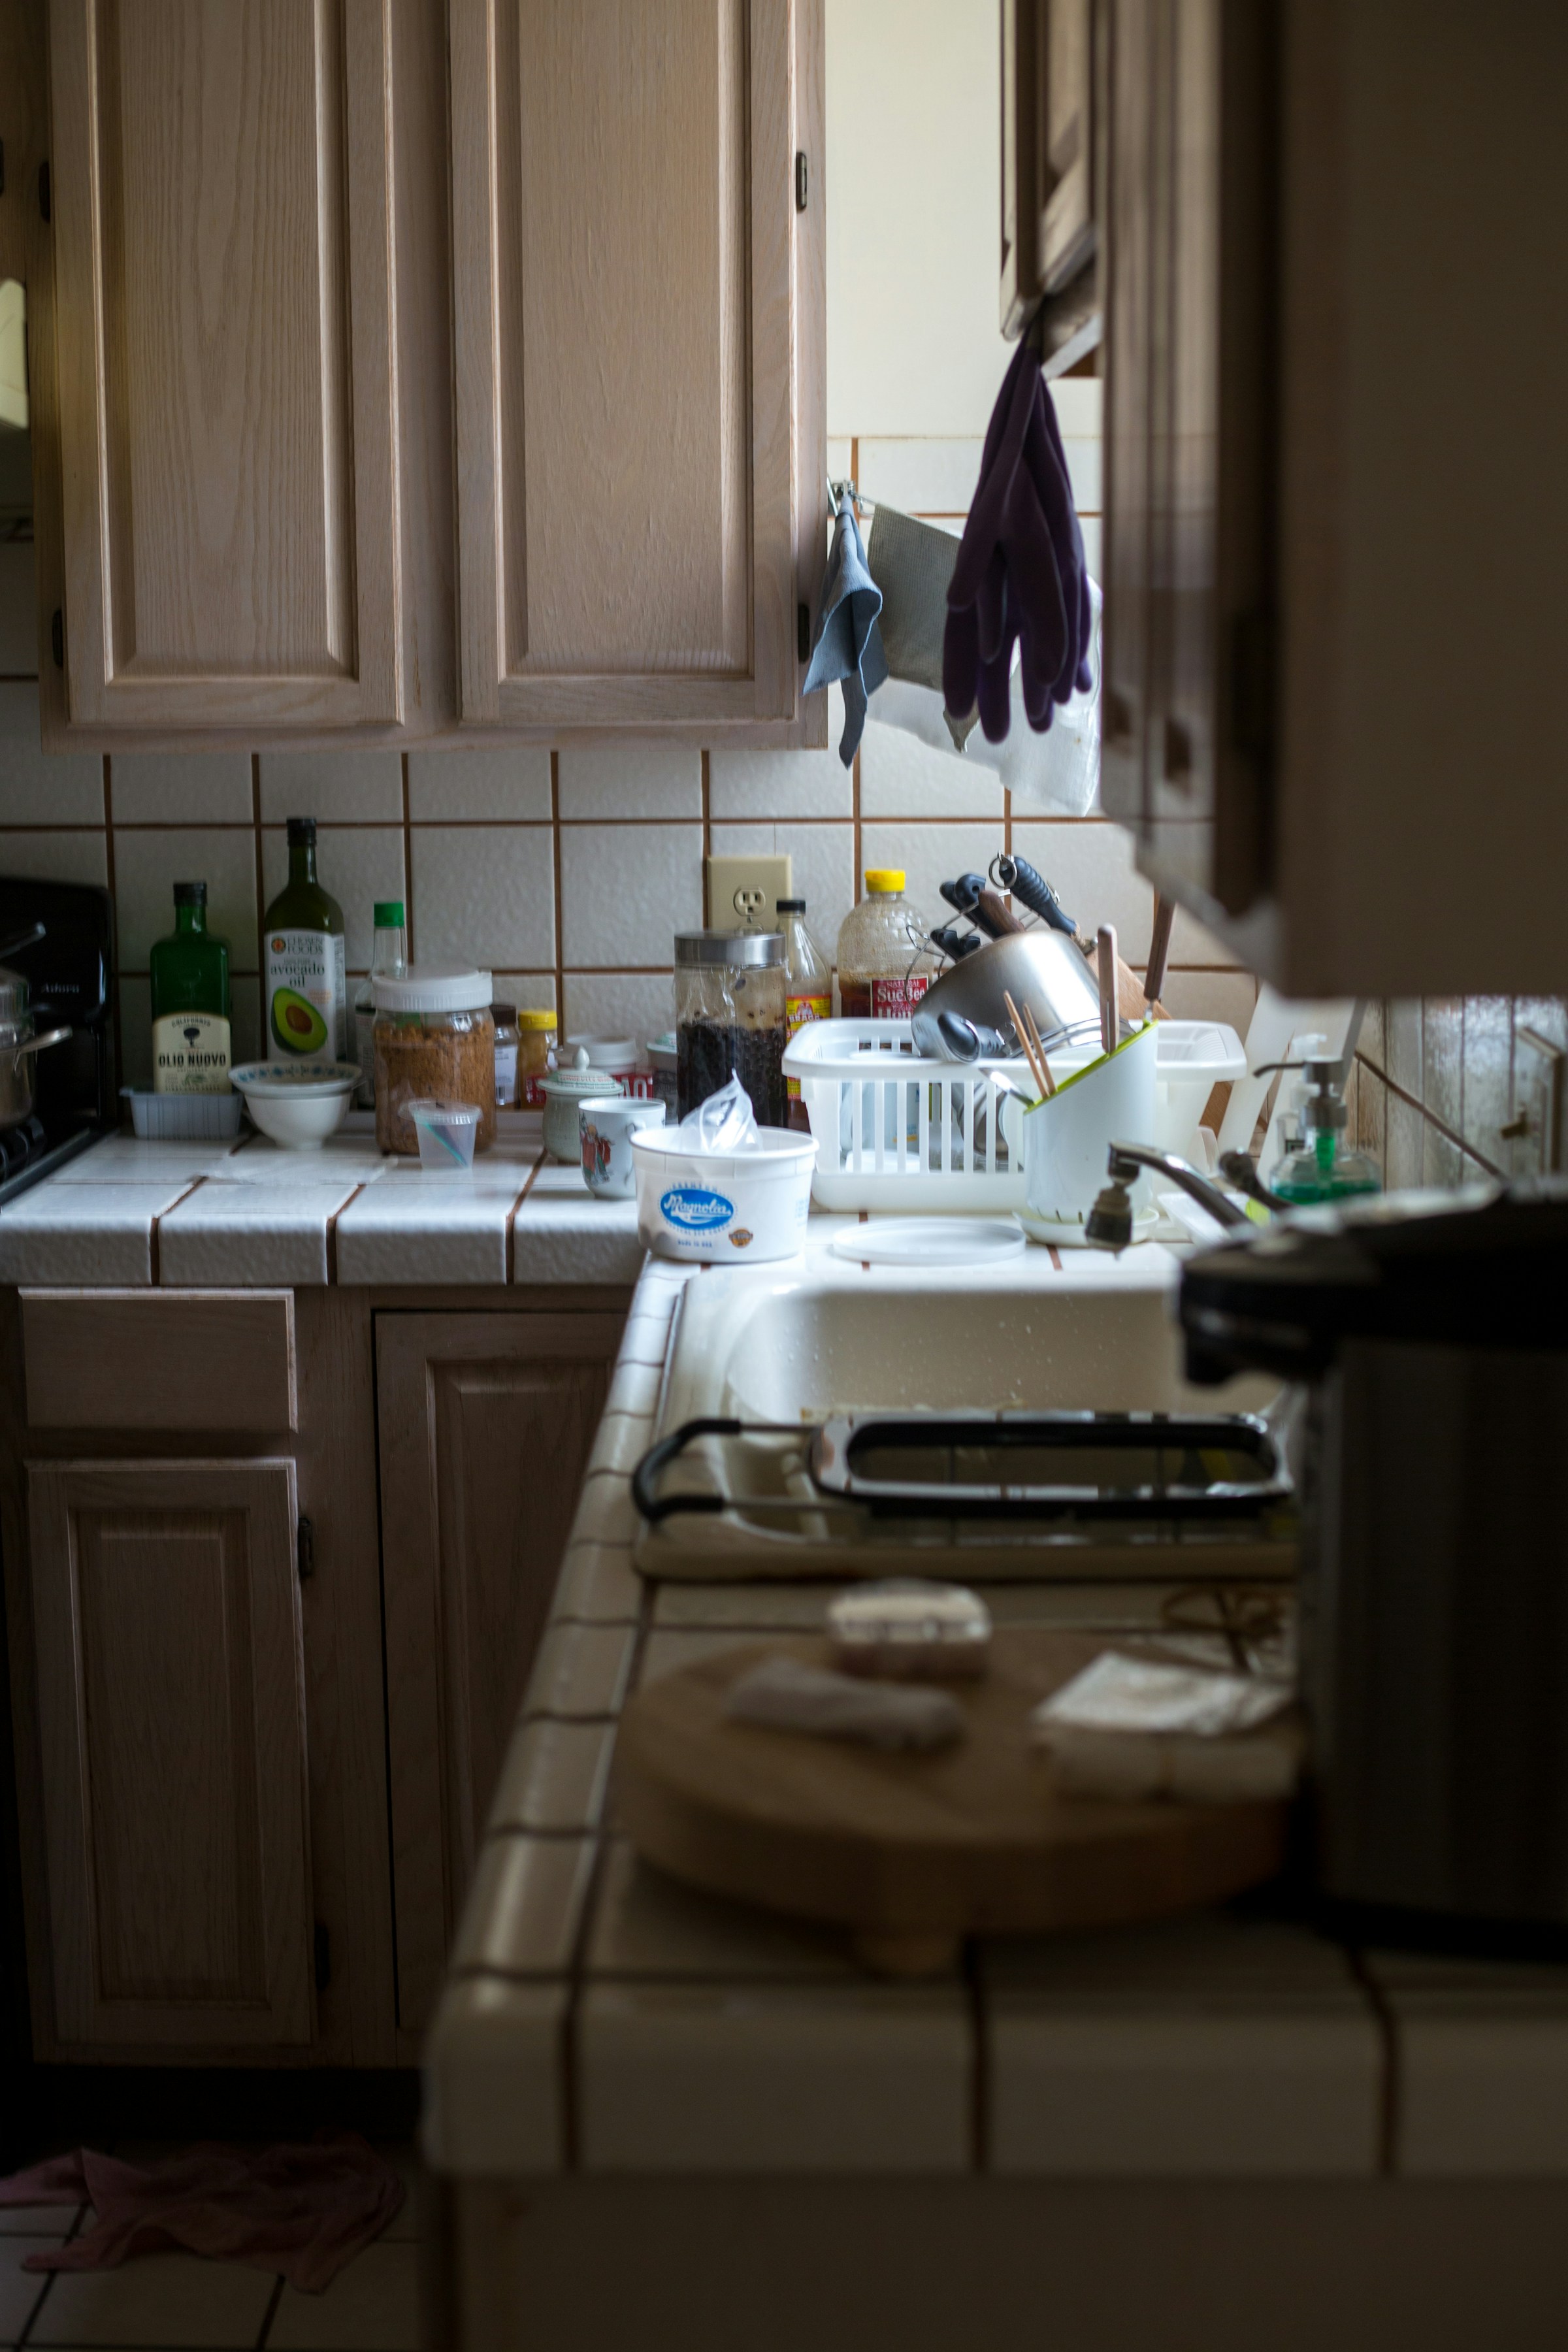 An untidy kitchen | Source: Unsplash